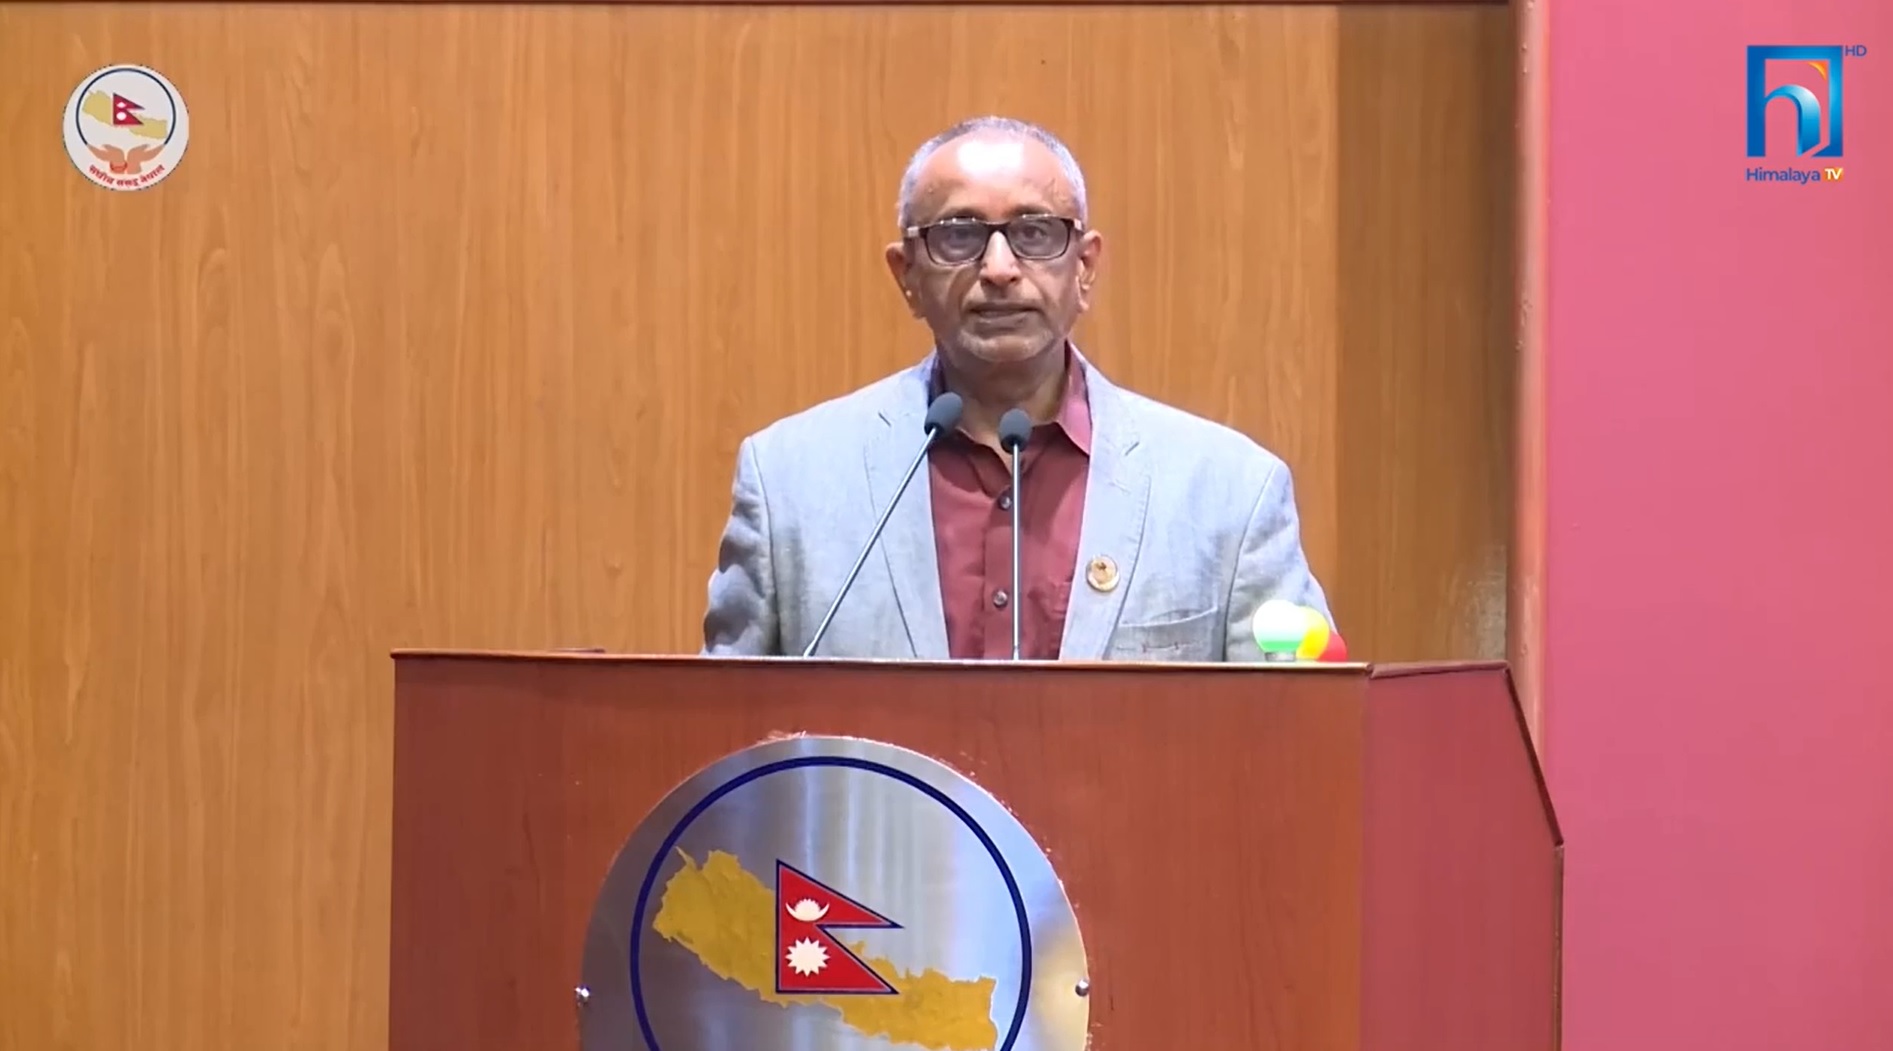 शक्ति राष्ट्रहरु नेपाललाई खेल मैदान बनाउन लागे : सांसद देव (भिडियो रिपोर्टसहित)